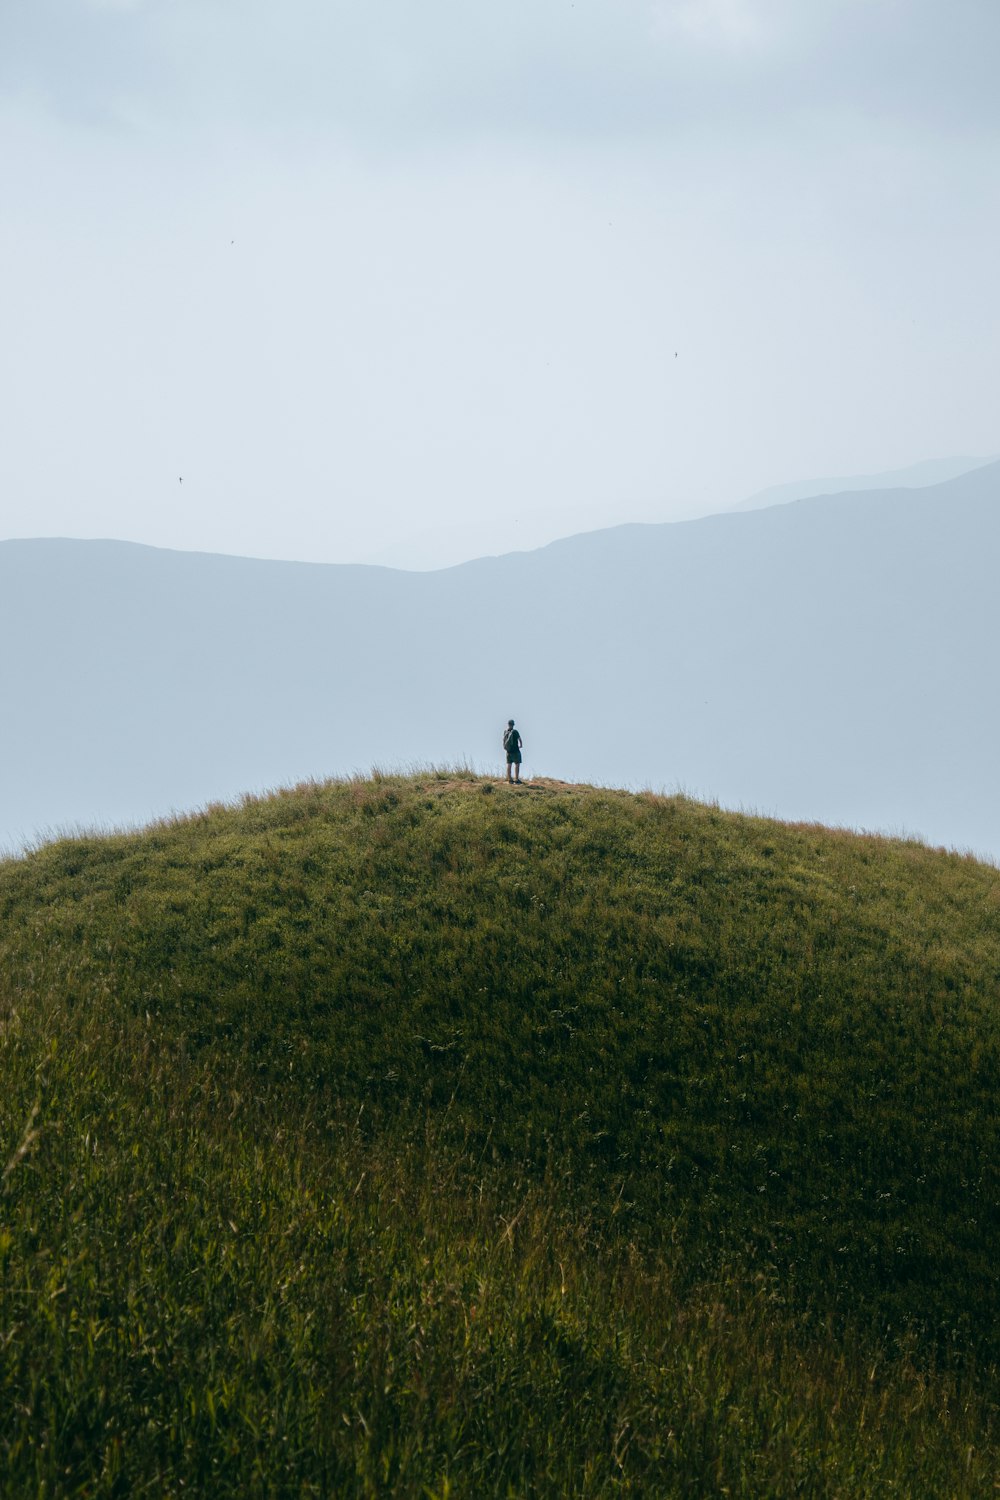 una persona solitaria parada en la cima de una colina cubierta de hierba